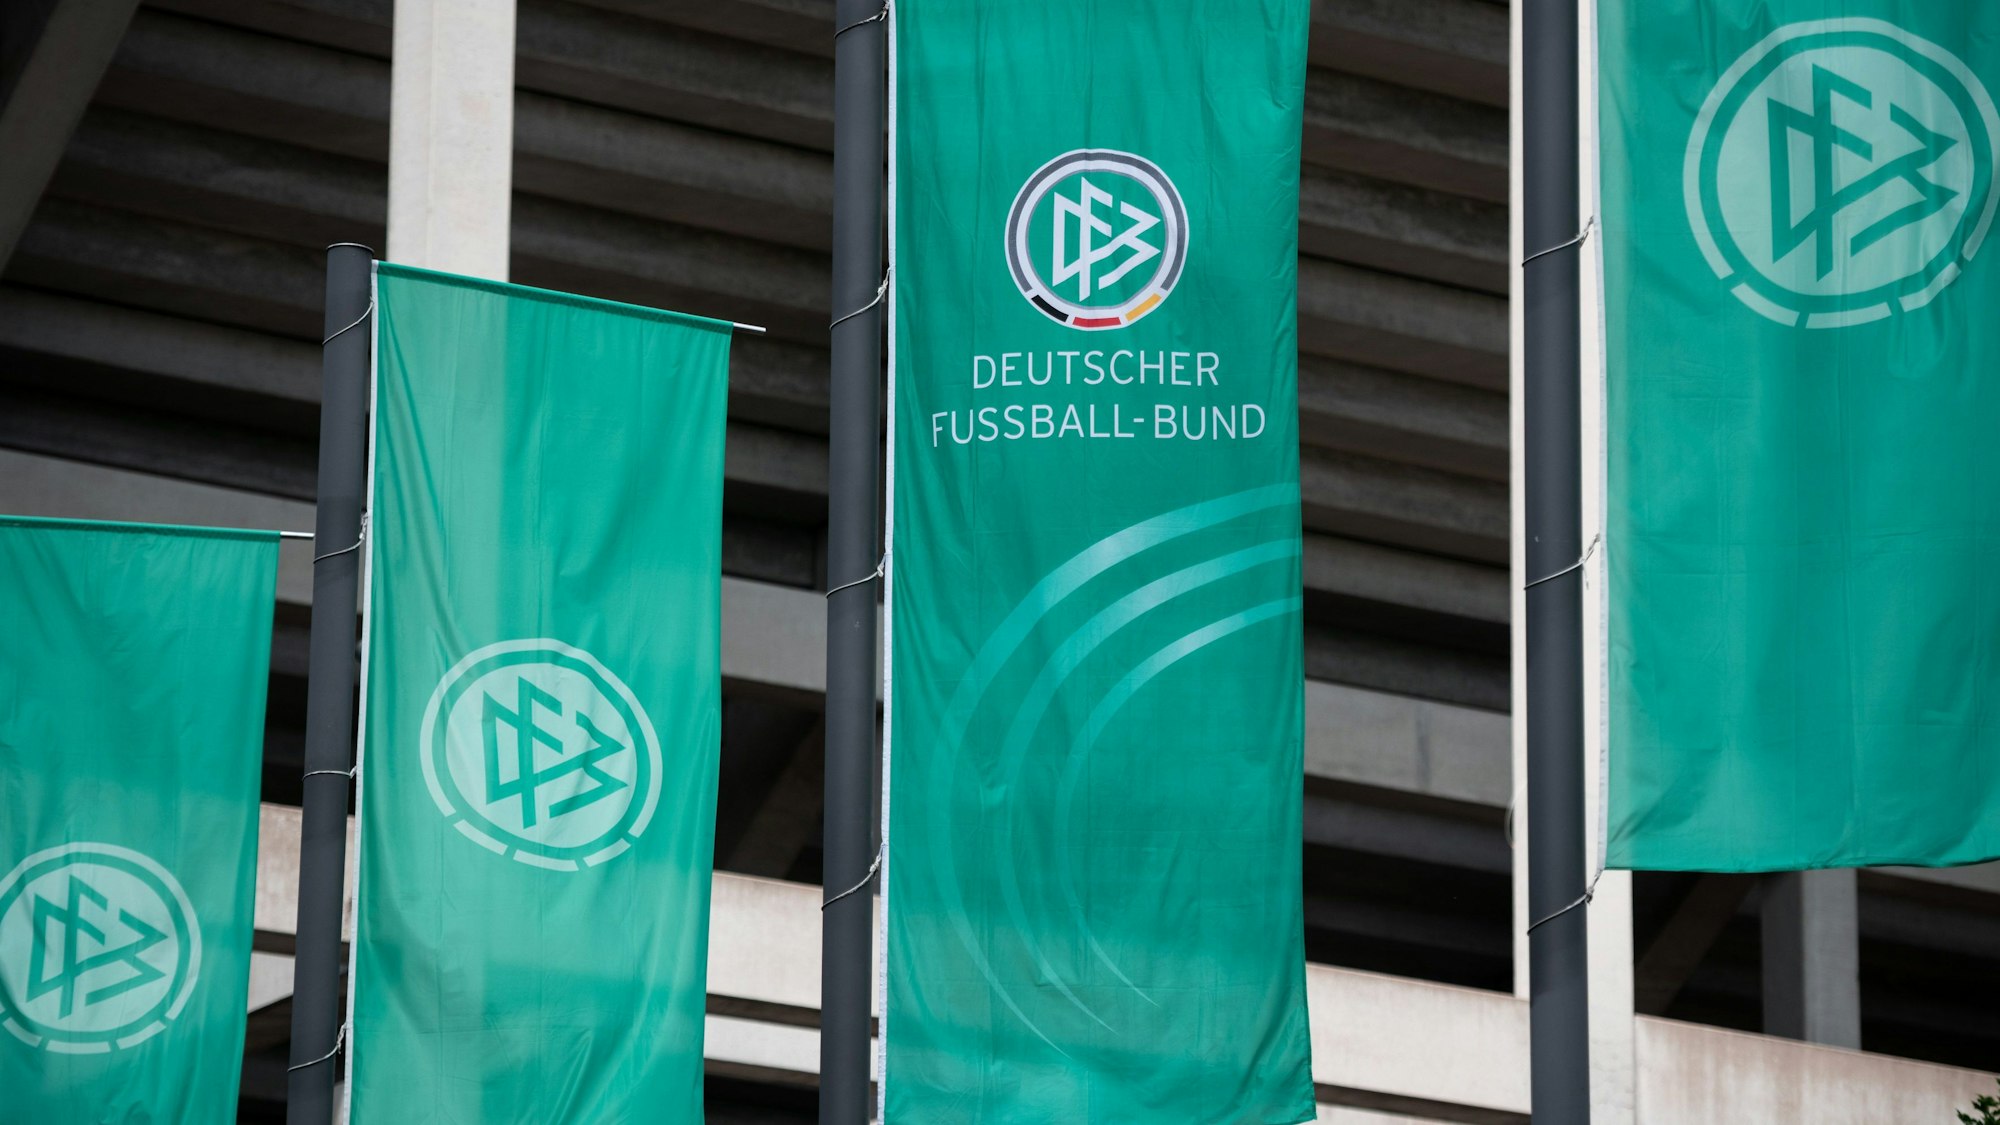 Fahnen mit dem Logo des Deutschen Fußball-Bundes (DFB) wehen im Wind.